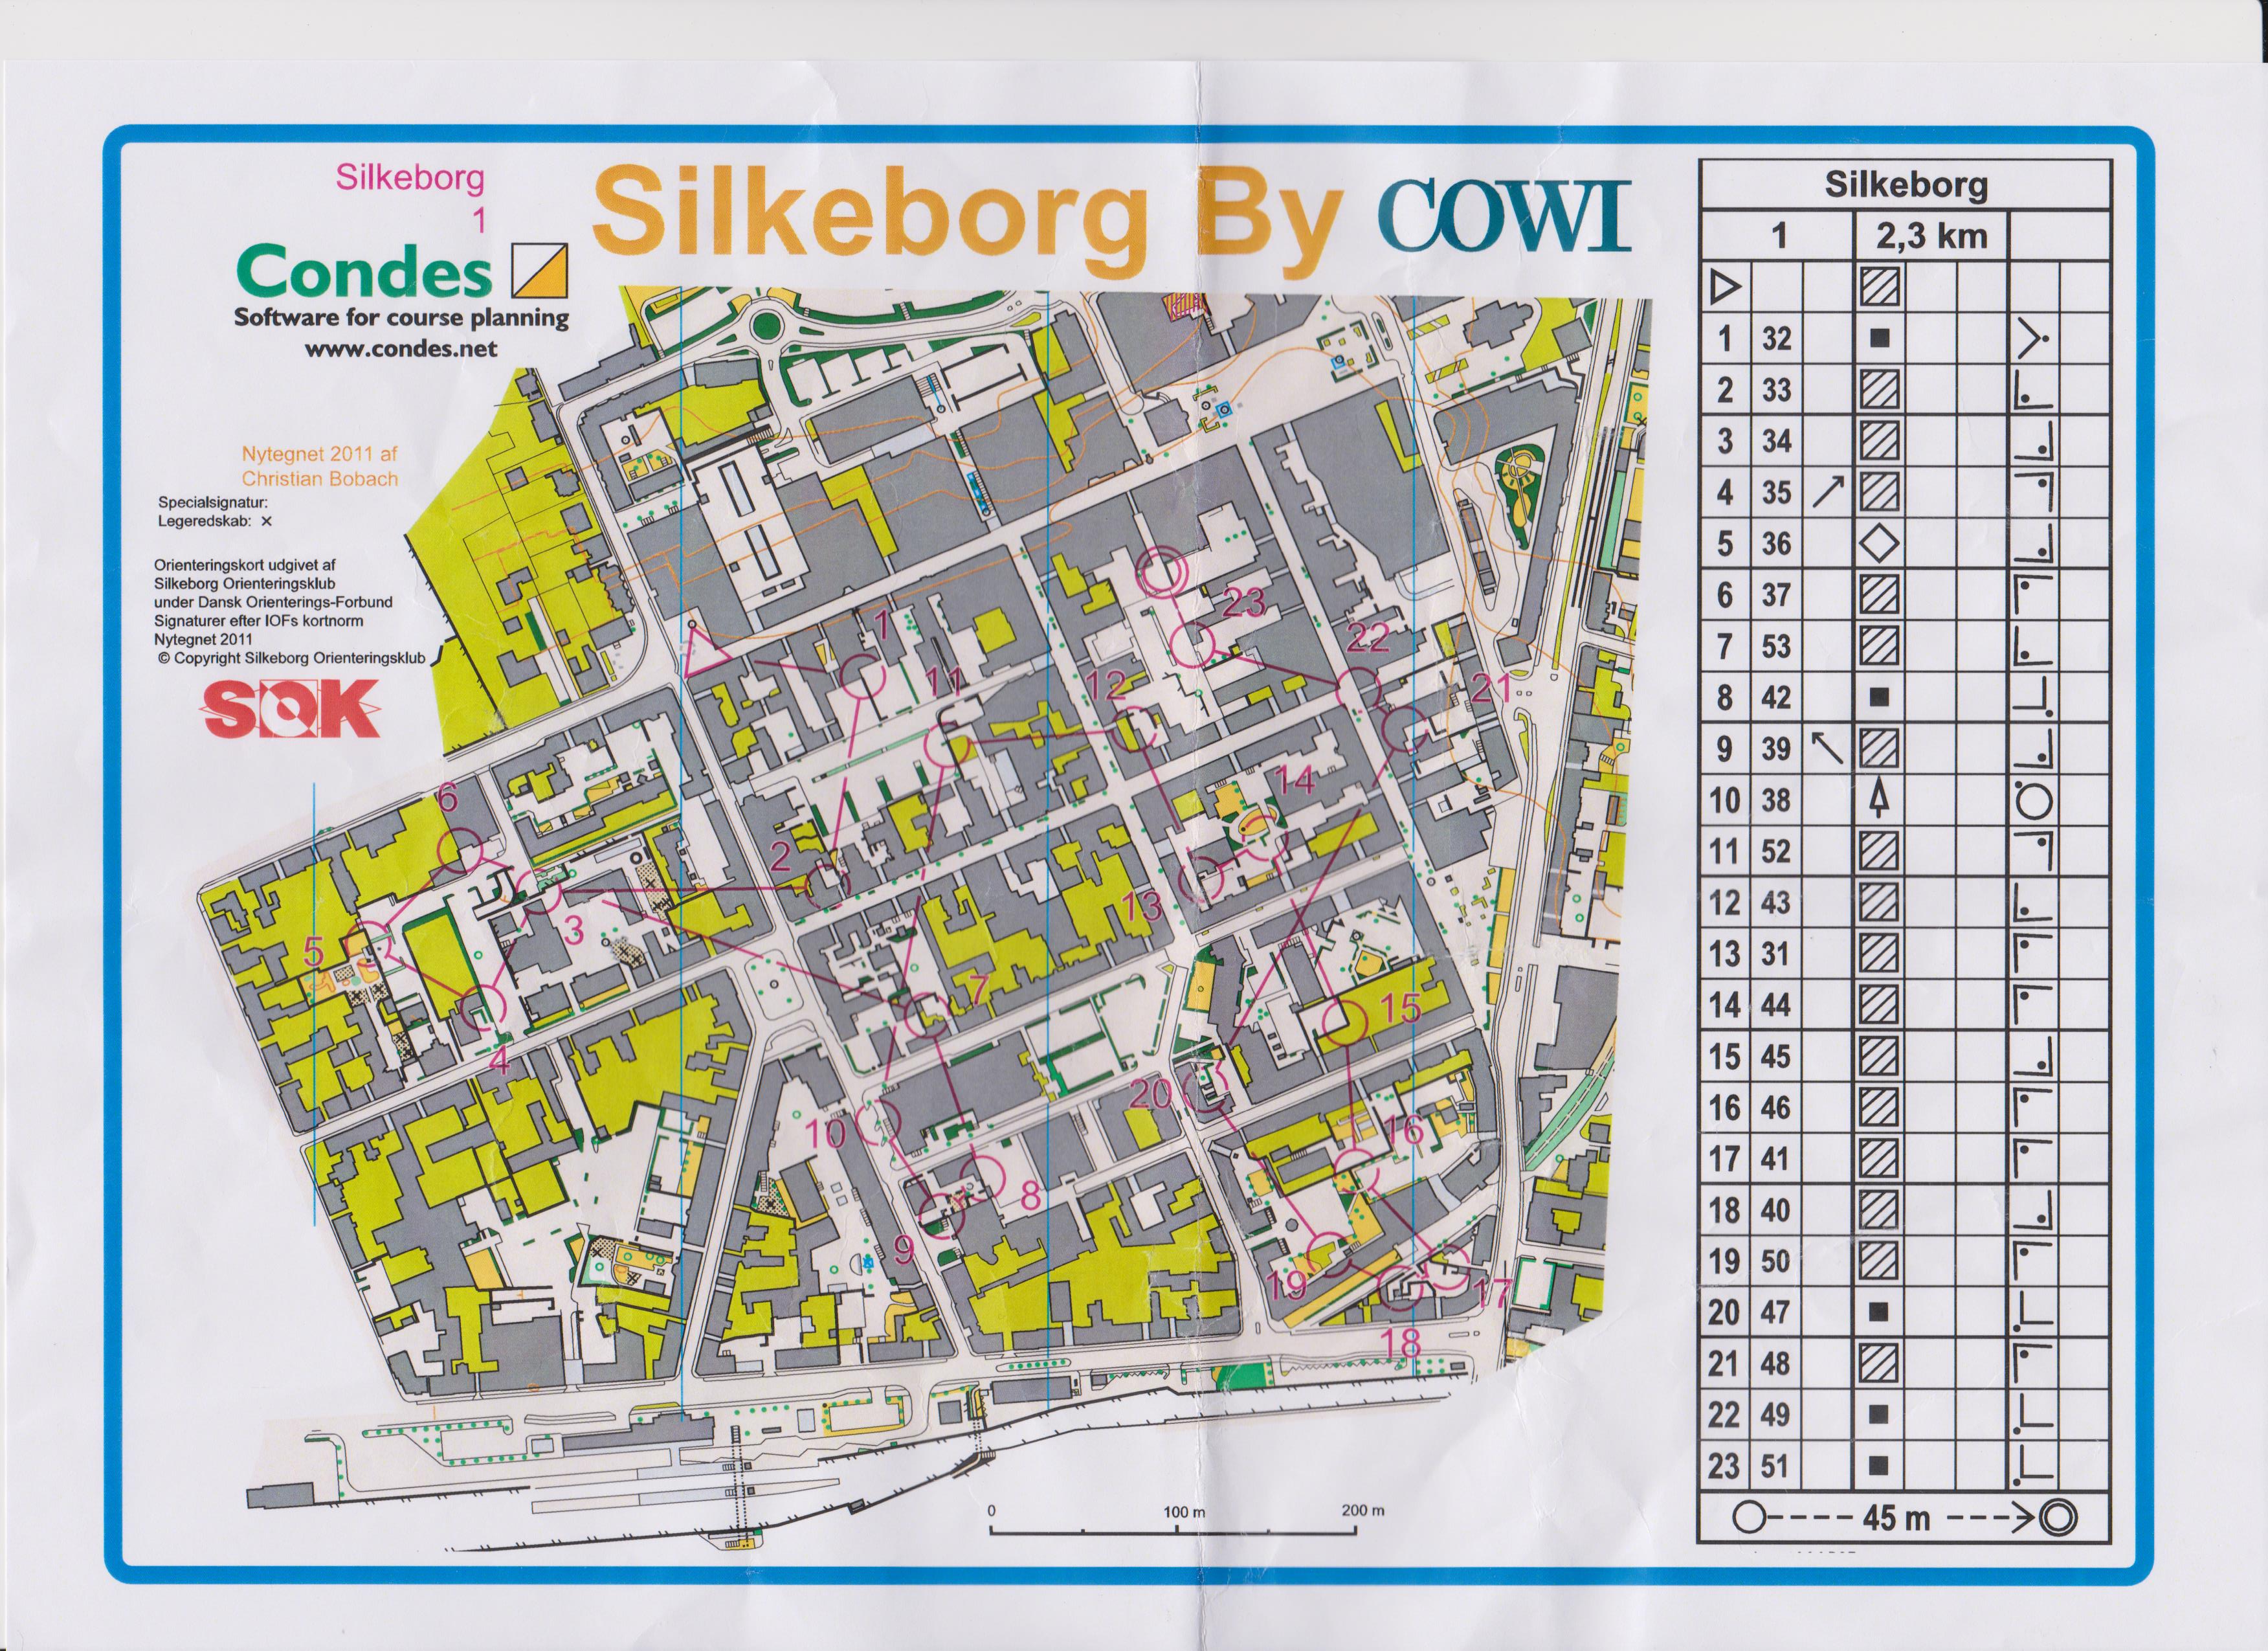 Sprinttræning i Silkeborg (20/04/2016)